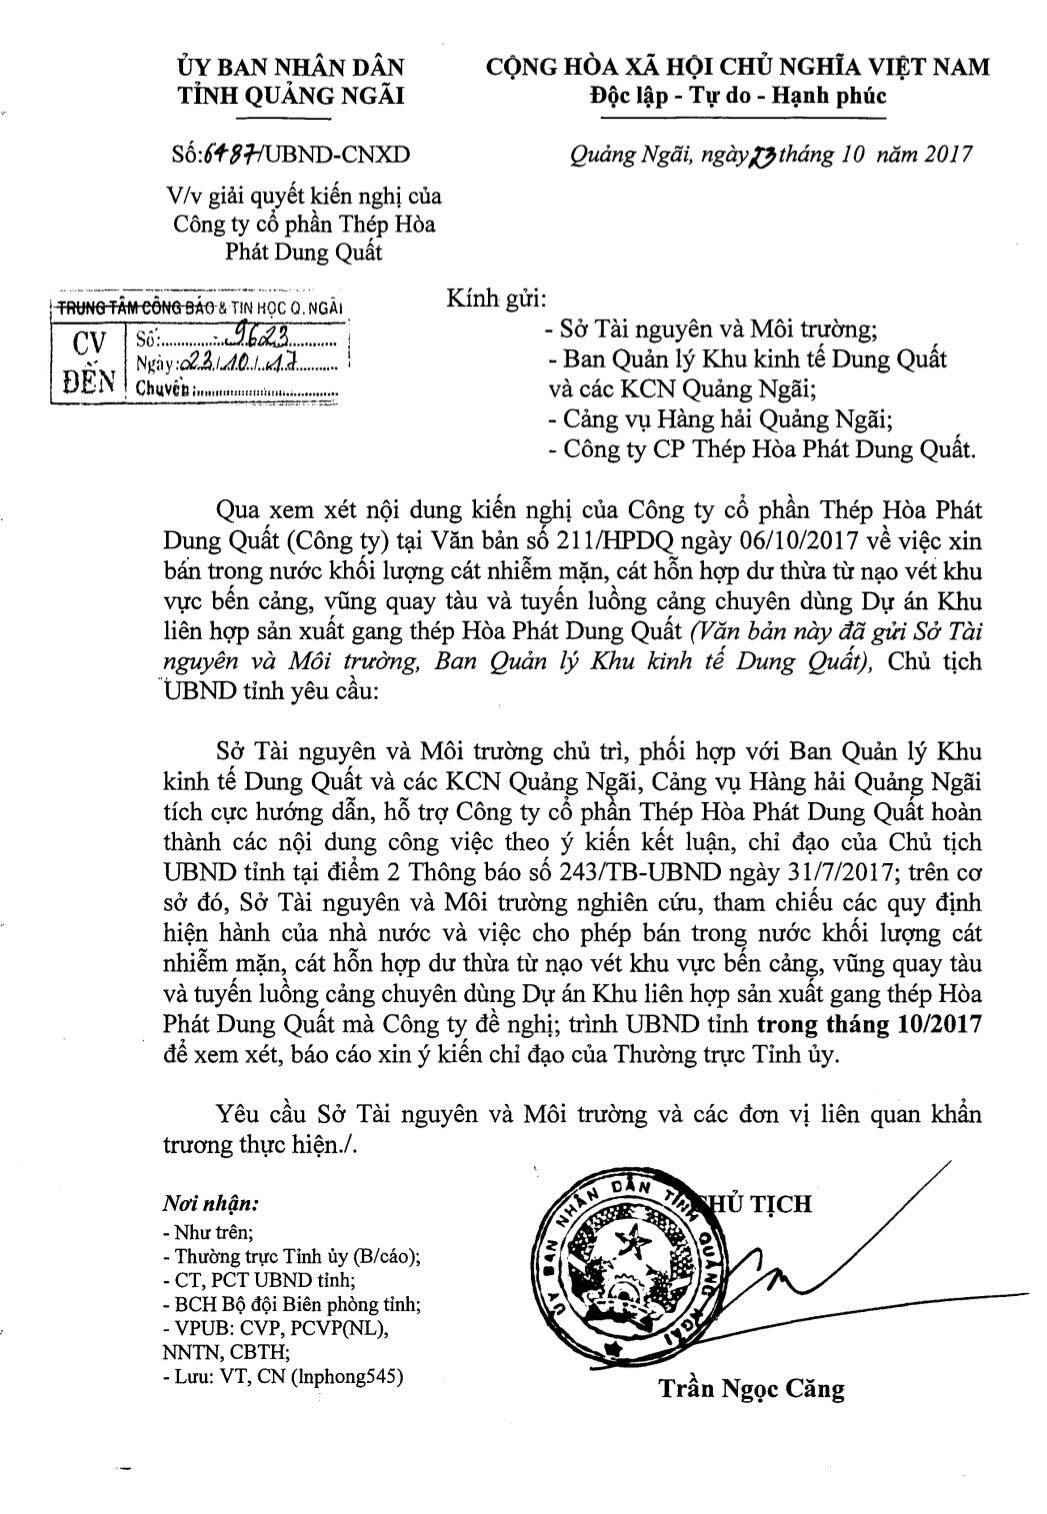 Trước đây, UBND tỉnh Quảng Ngãi đã có công văn giải quyết kiến nghị của Công ty Cổ phần thép Hòa Phát về việc xin bán trong nước khối lượng cát nhiễm mặn dư thừa từ nạo vét